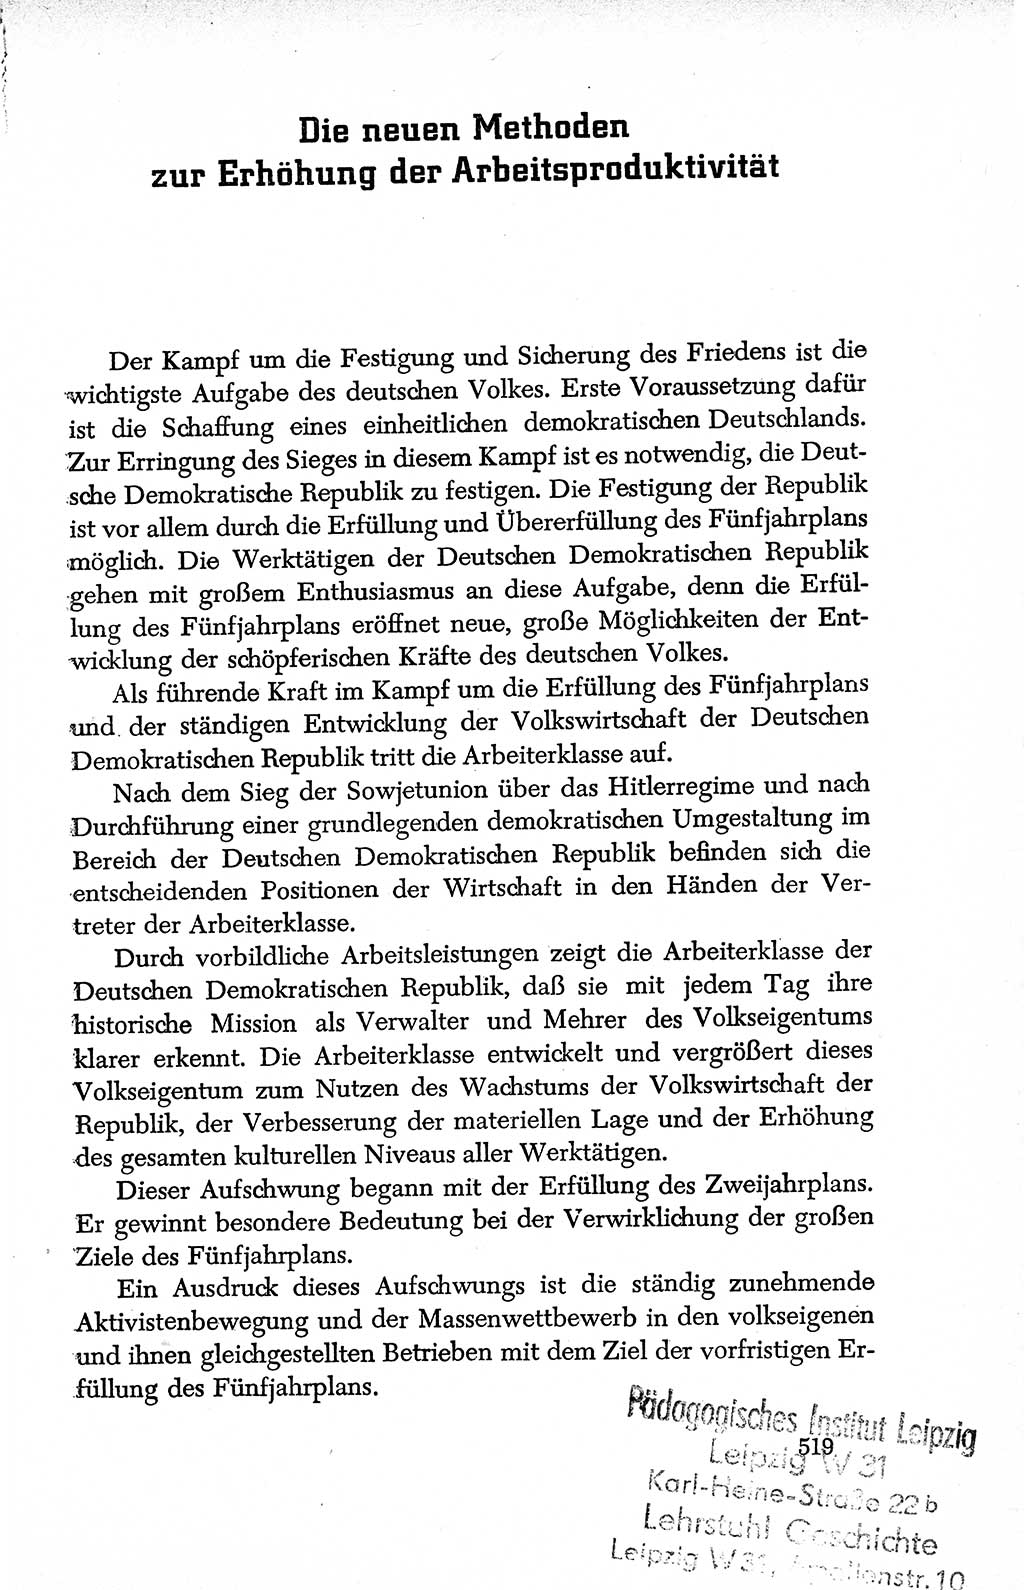 Dokumente der Sozialistischen Einheitspartei Deutschlands (SED) [Deutsche Demokratische Republik (DDR)] 1950-1952, Seite 519 (Dok. SED DDR 1950-1952, S. 519)